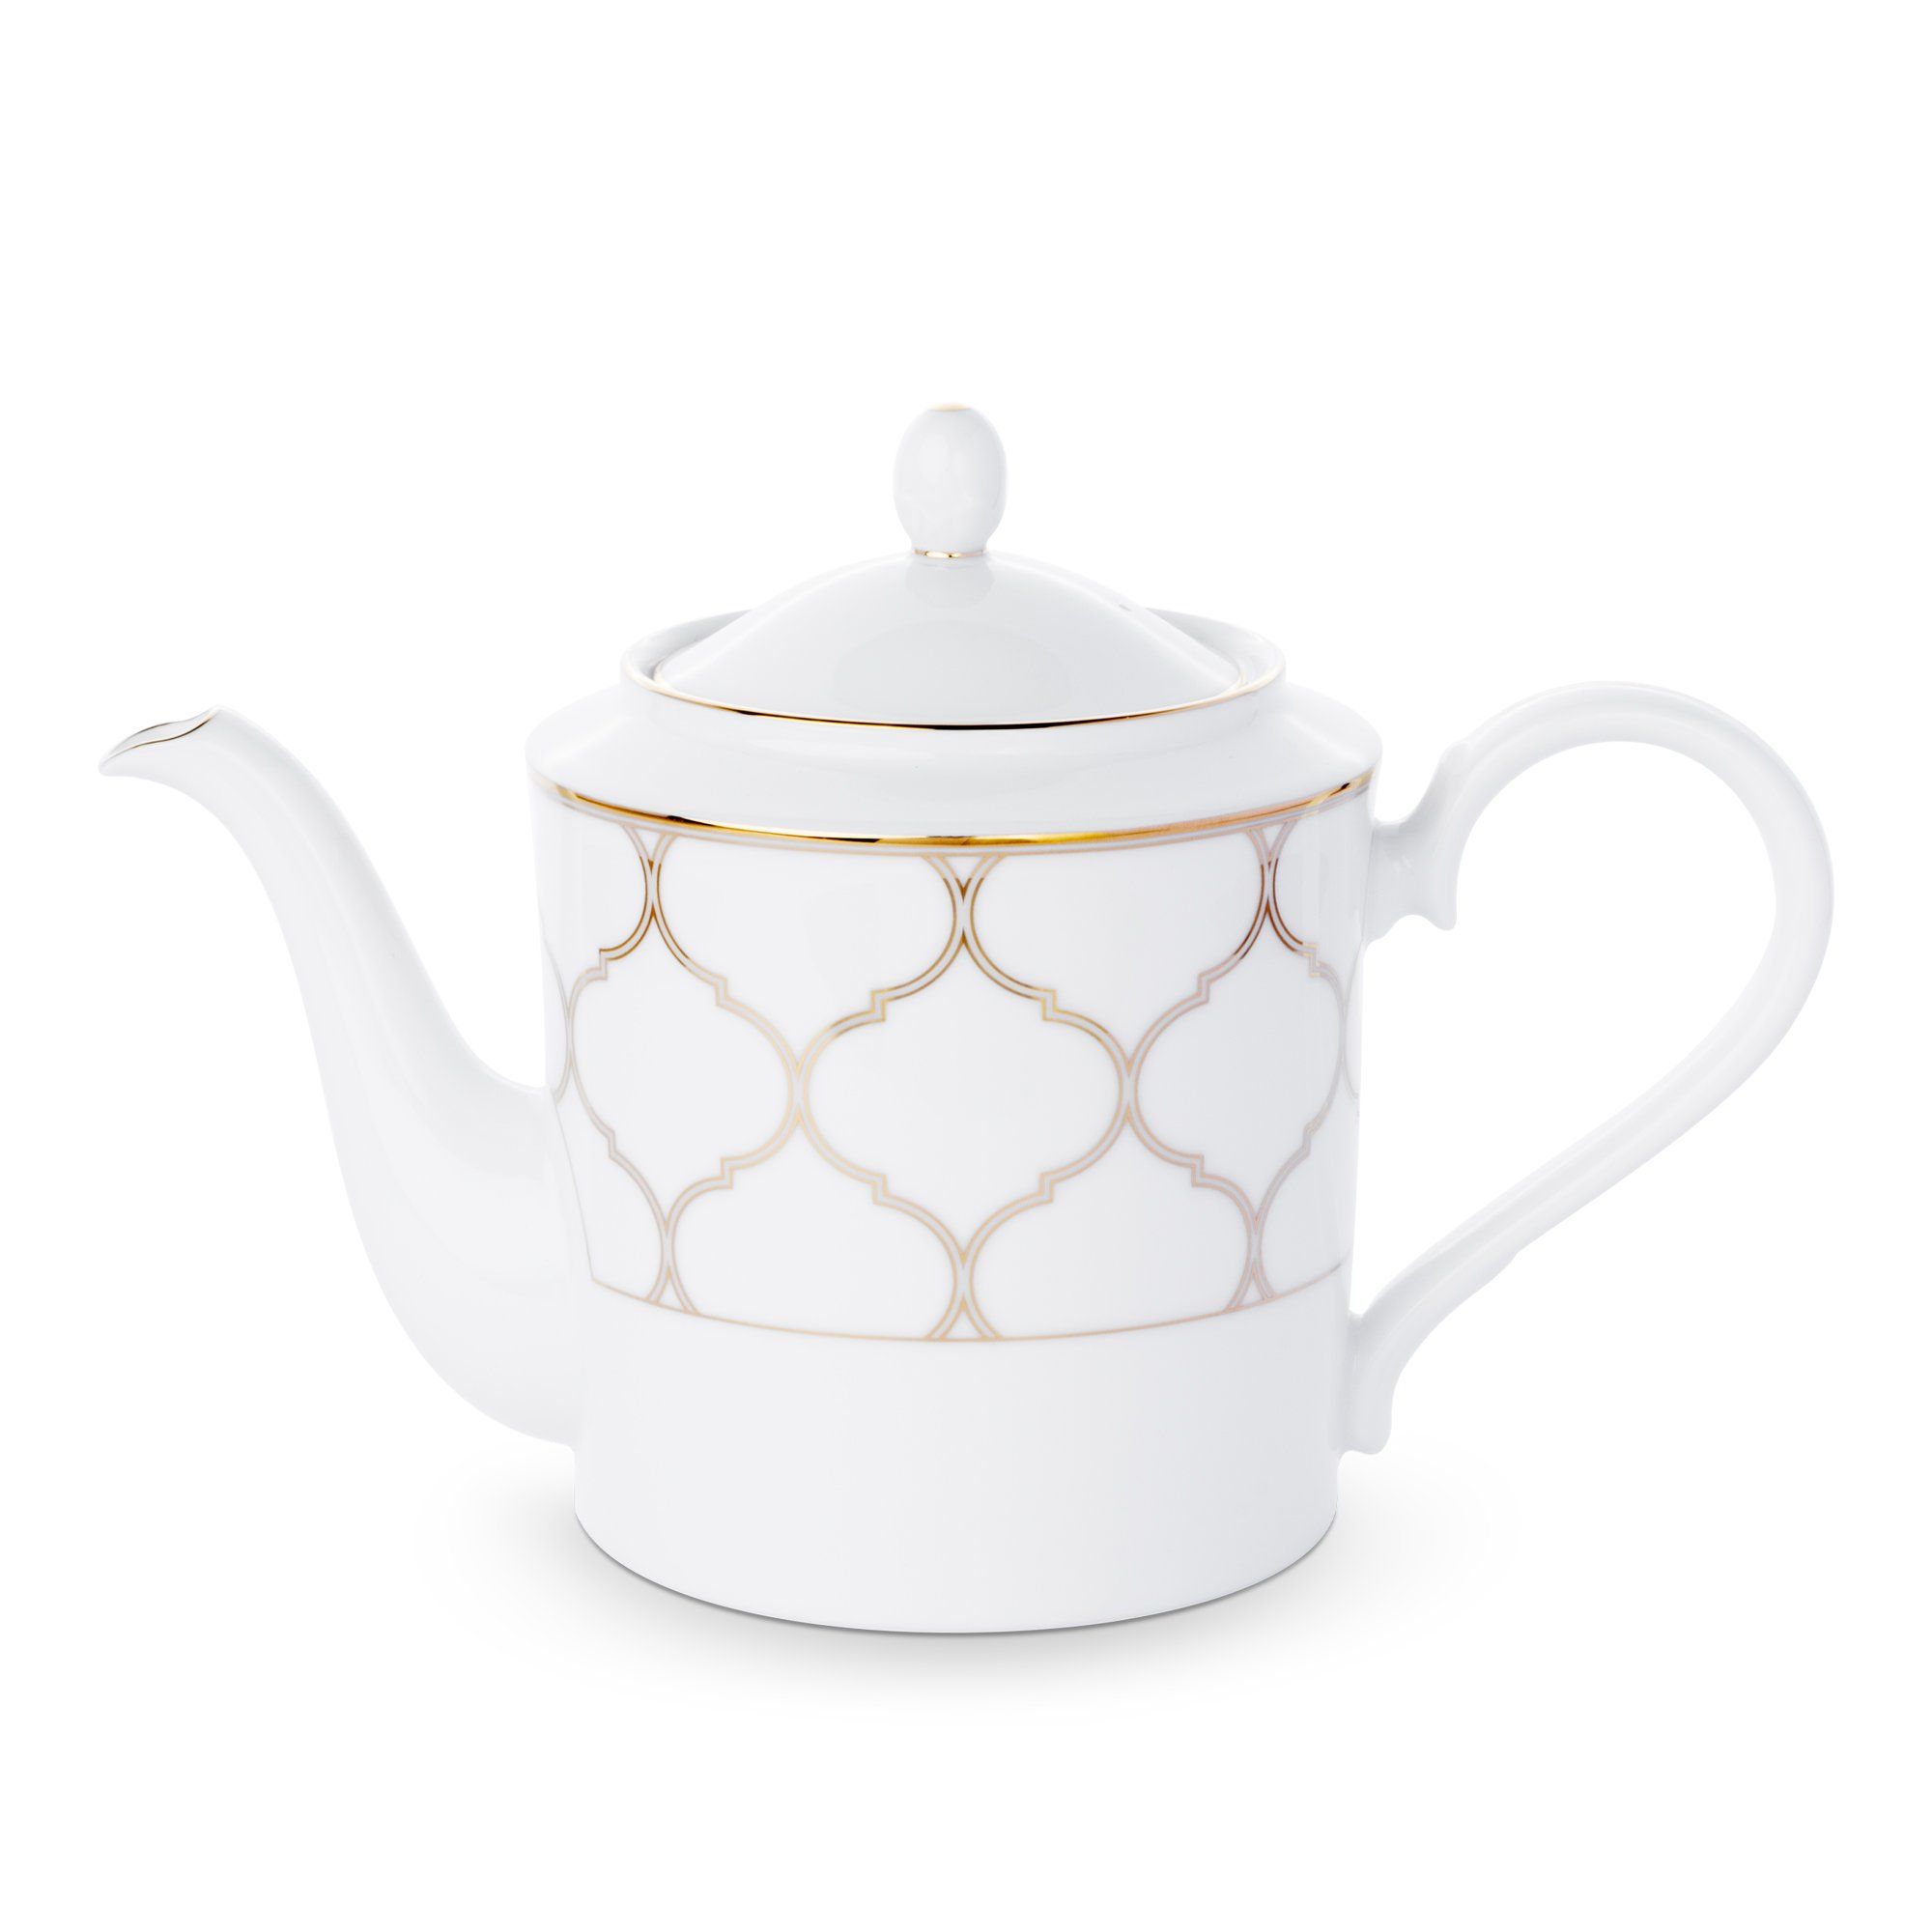  Bình trà có dung tích 1.500ml sứ trắng | Eternal Palace Gold 1728L-91023 